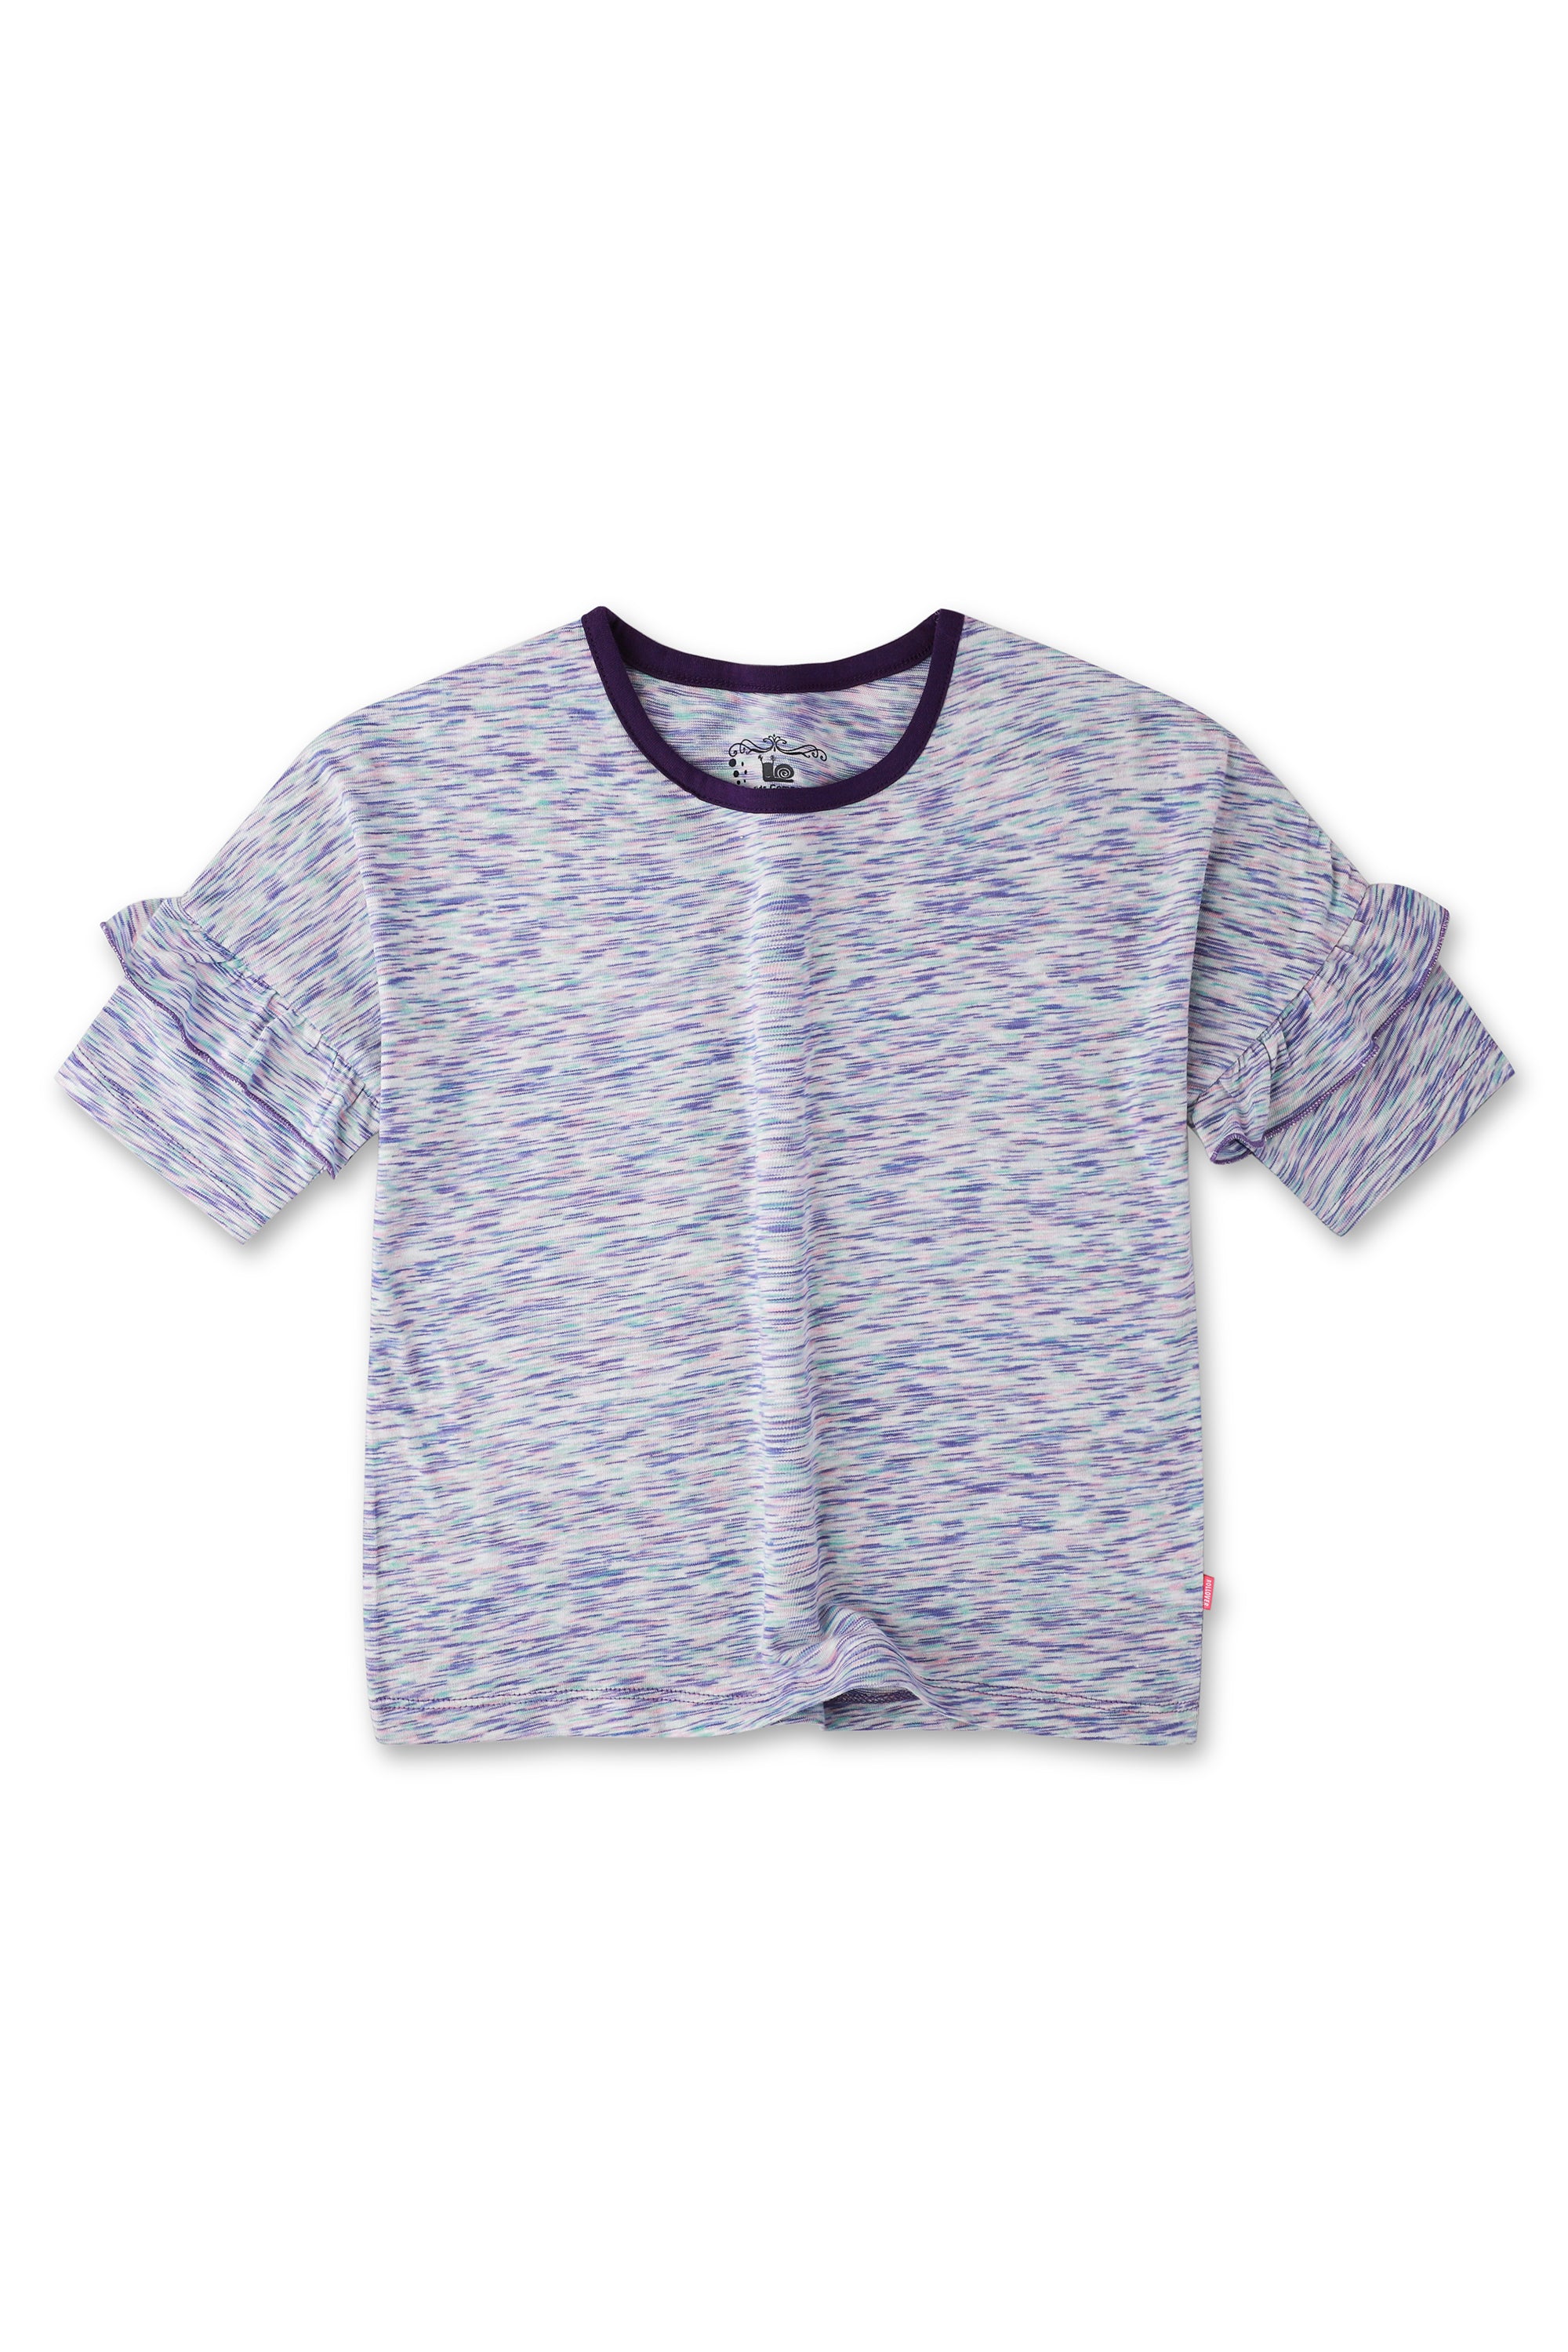 Lavender Space Dye T-Shirt